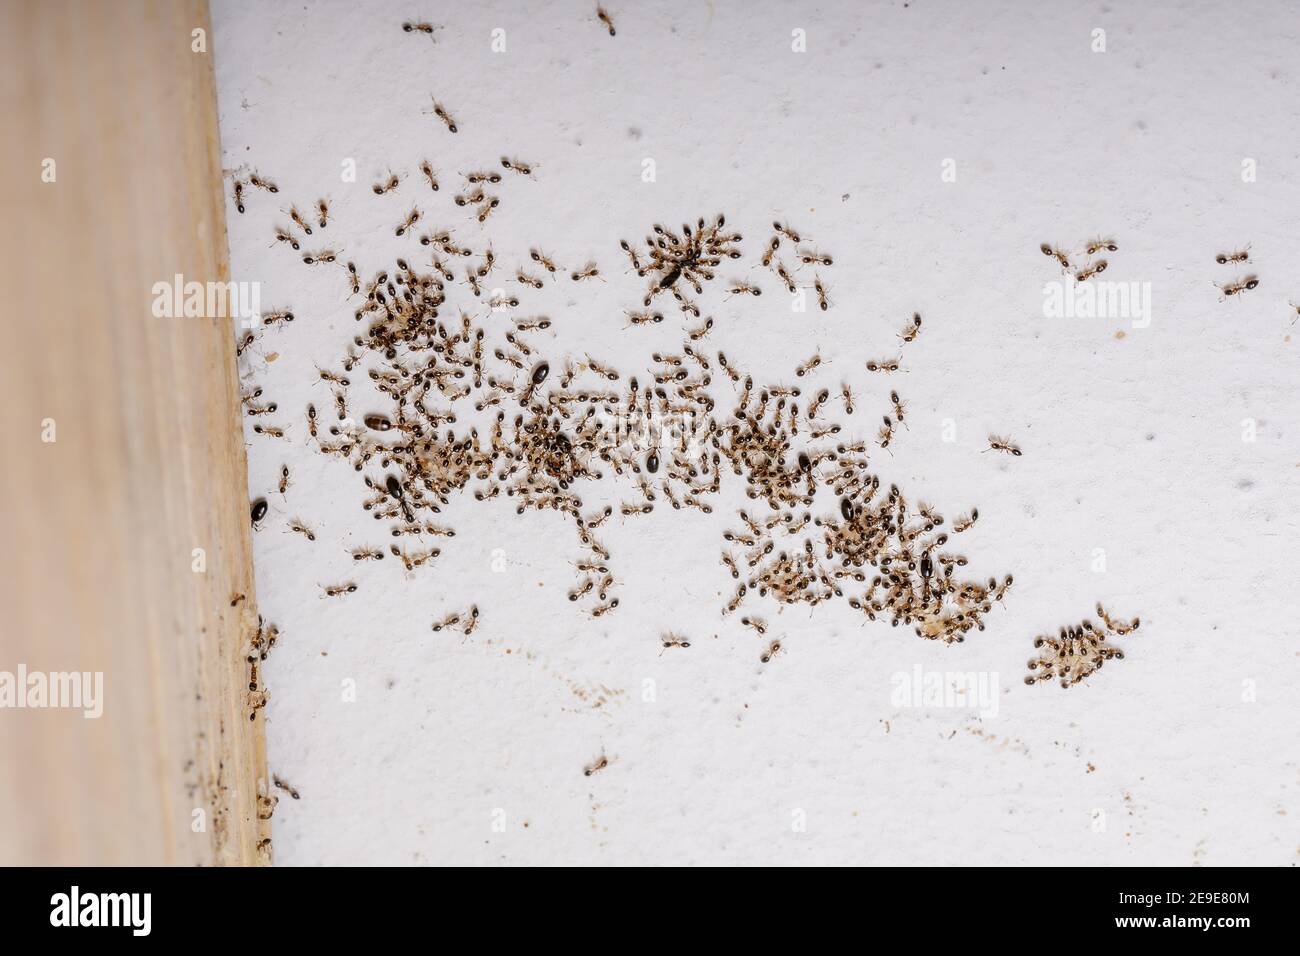 Adult Flower Ants of the species Monomorium floricola Stock Photo